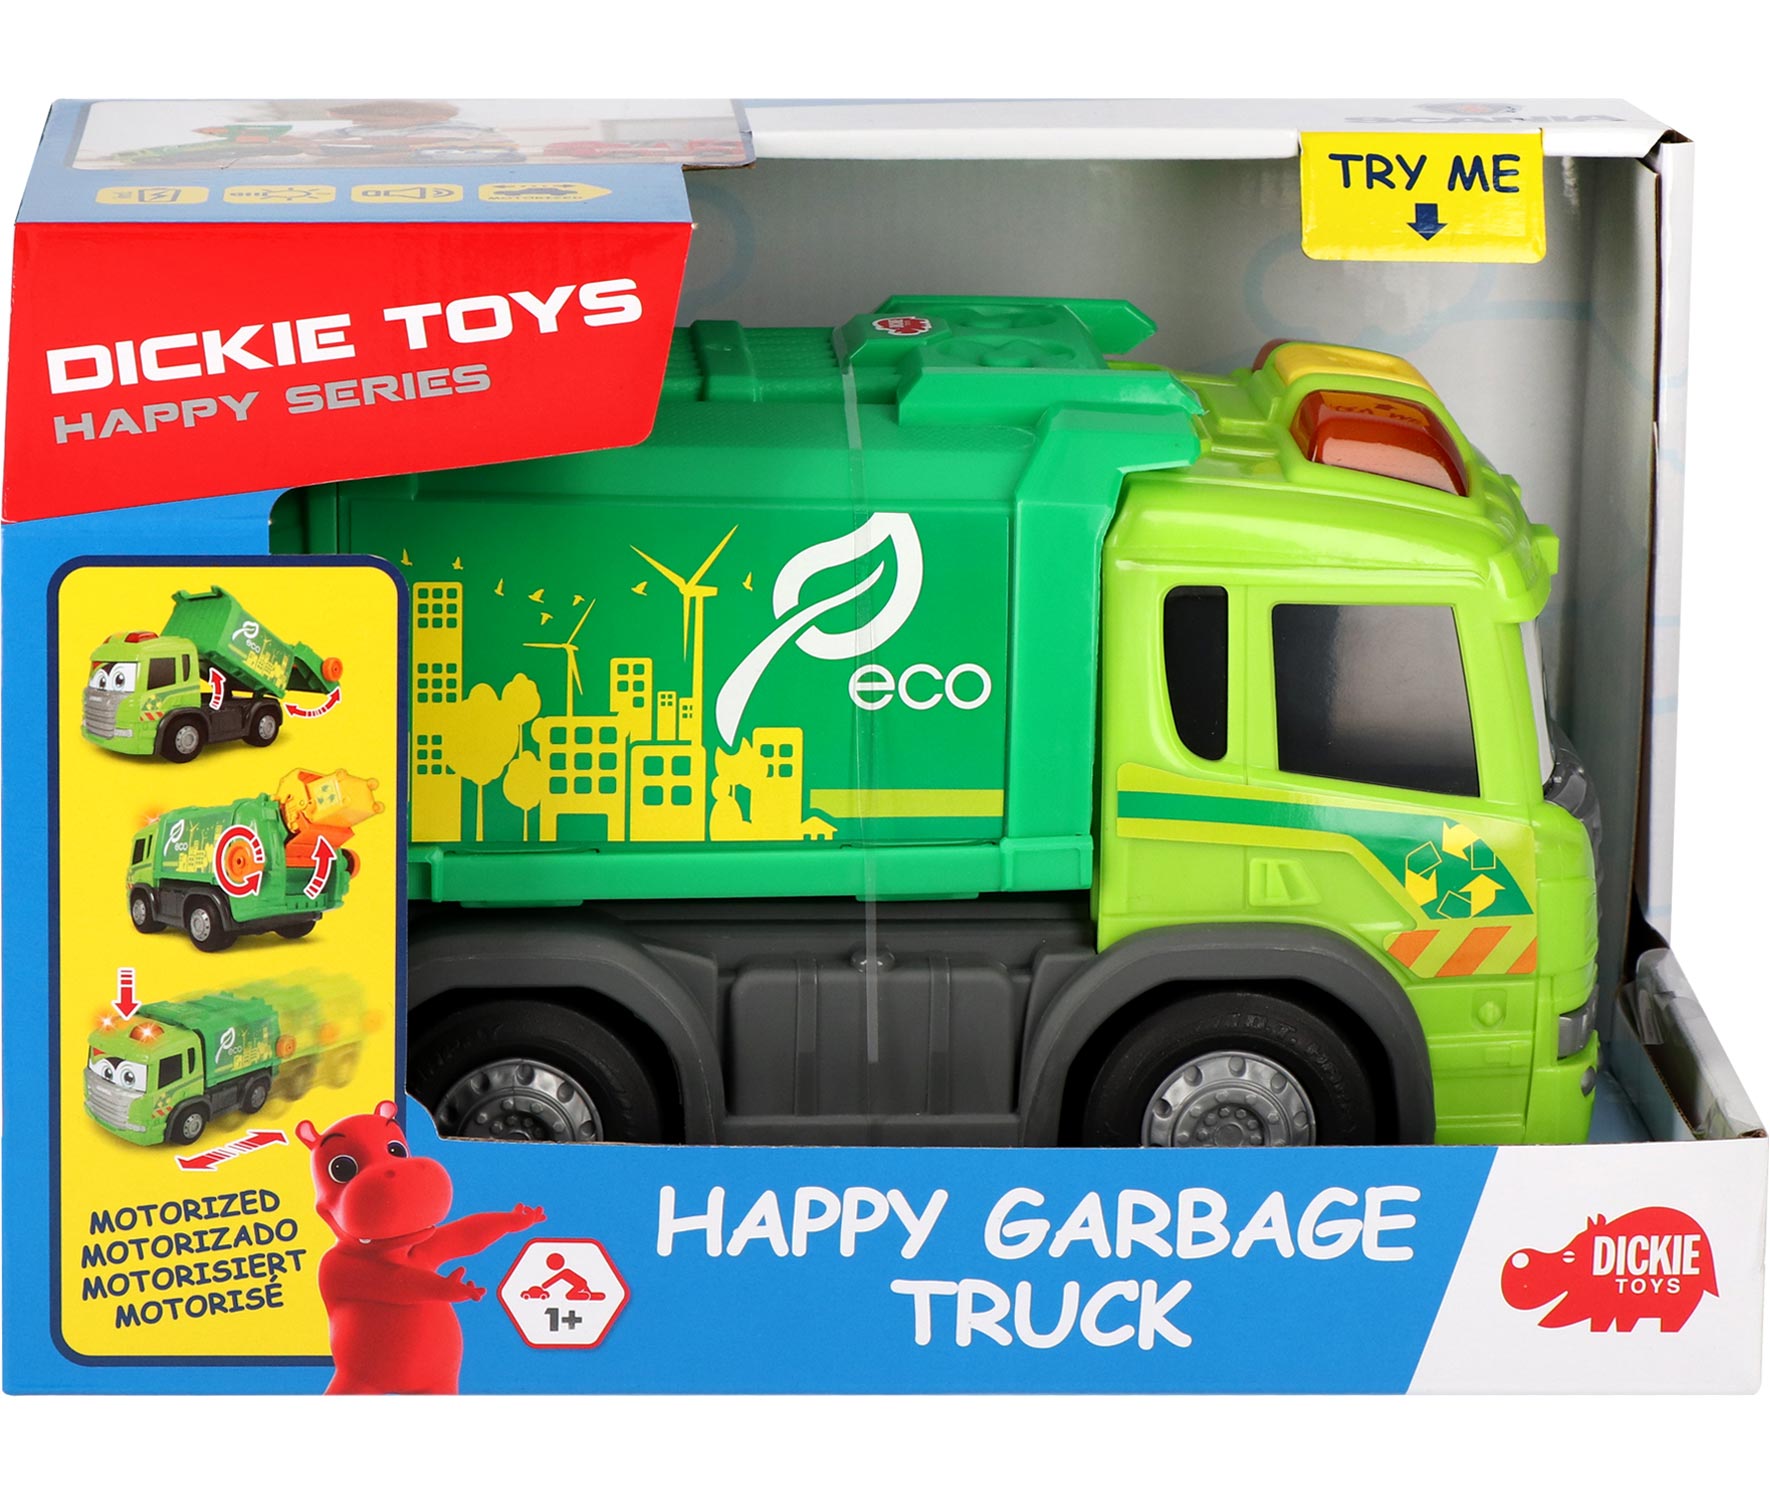 Müllwagen Auto Müllauto Müllabfuhr Dickie Toys Garbage Truck Spielzeug 